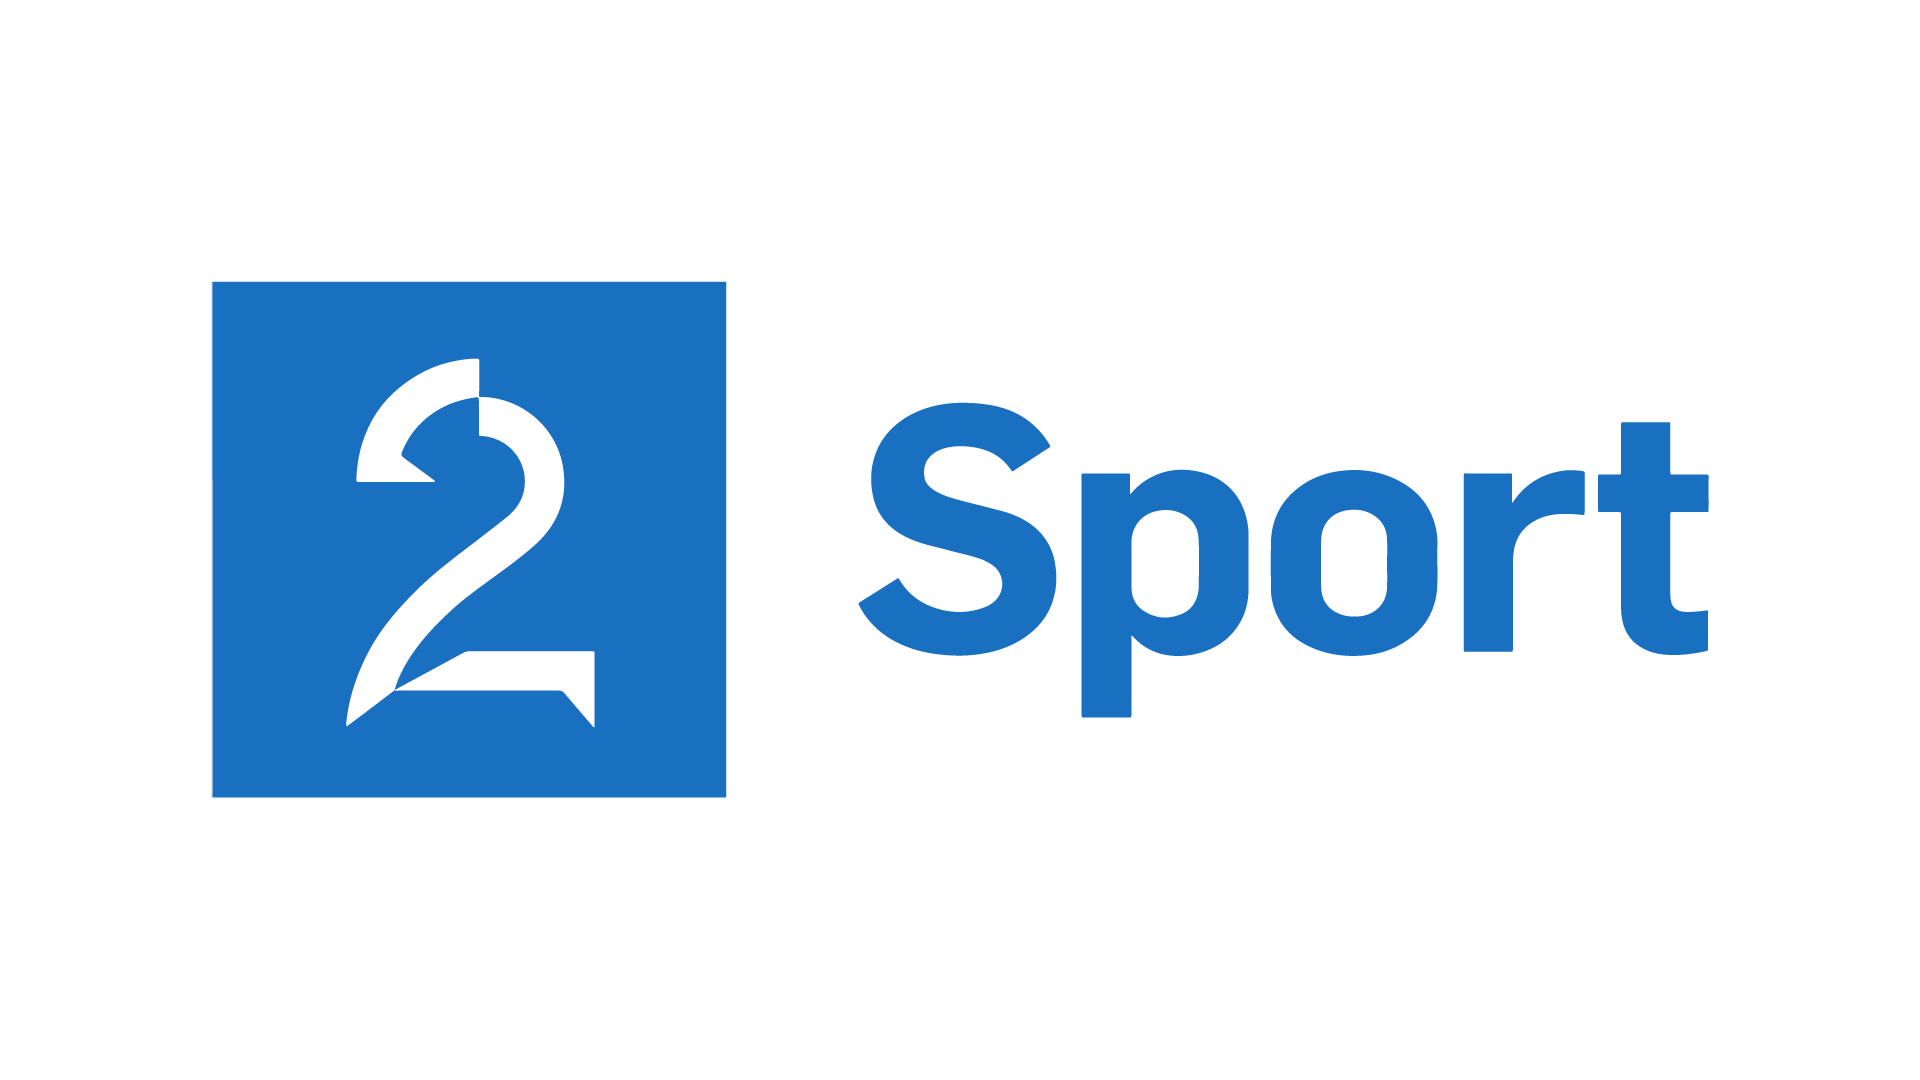 Tv2. Sport TV 2. ТВ 2к спорт. TV 2 ᴴᴰ.